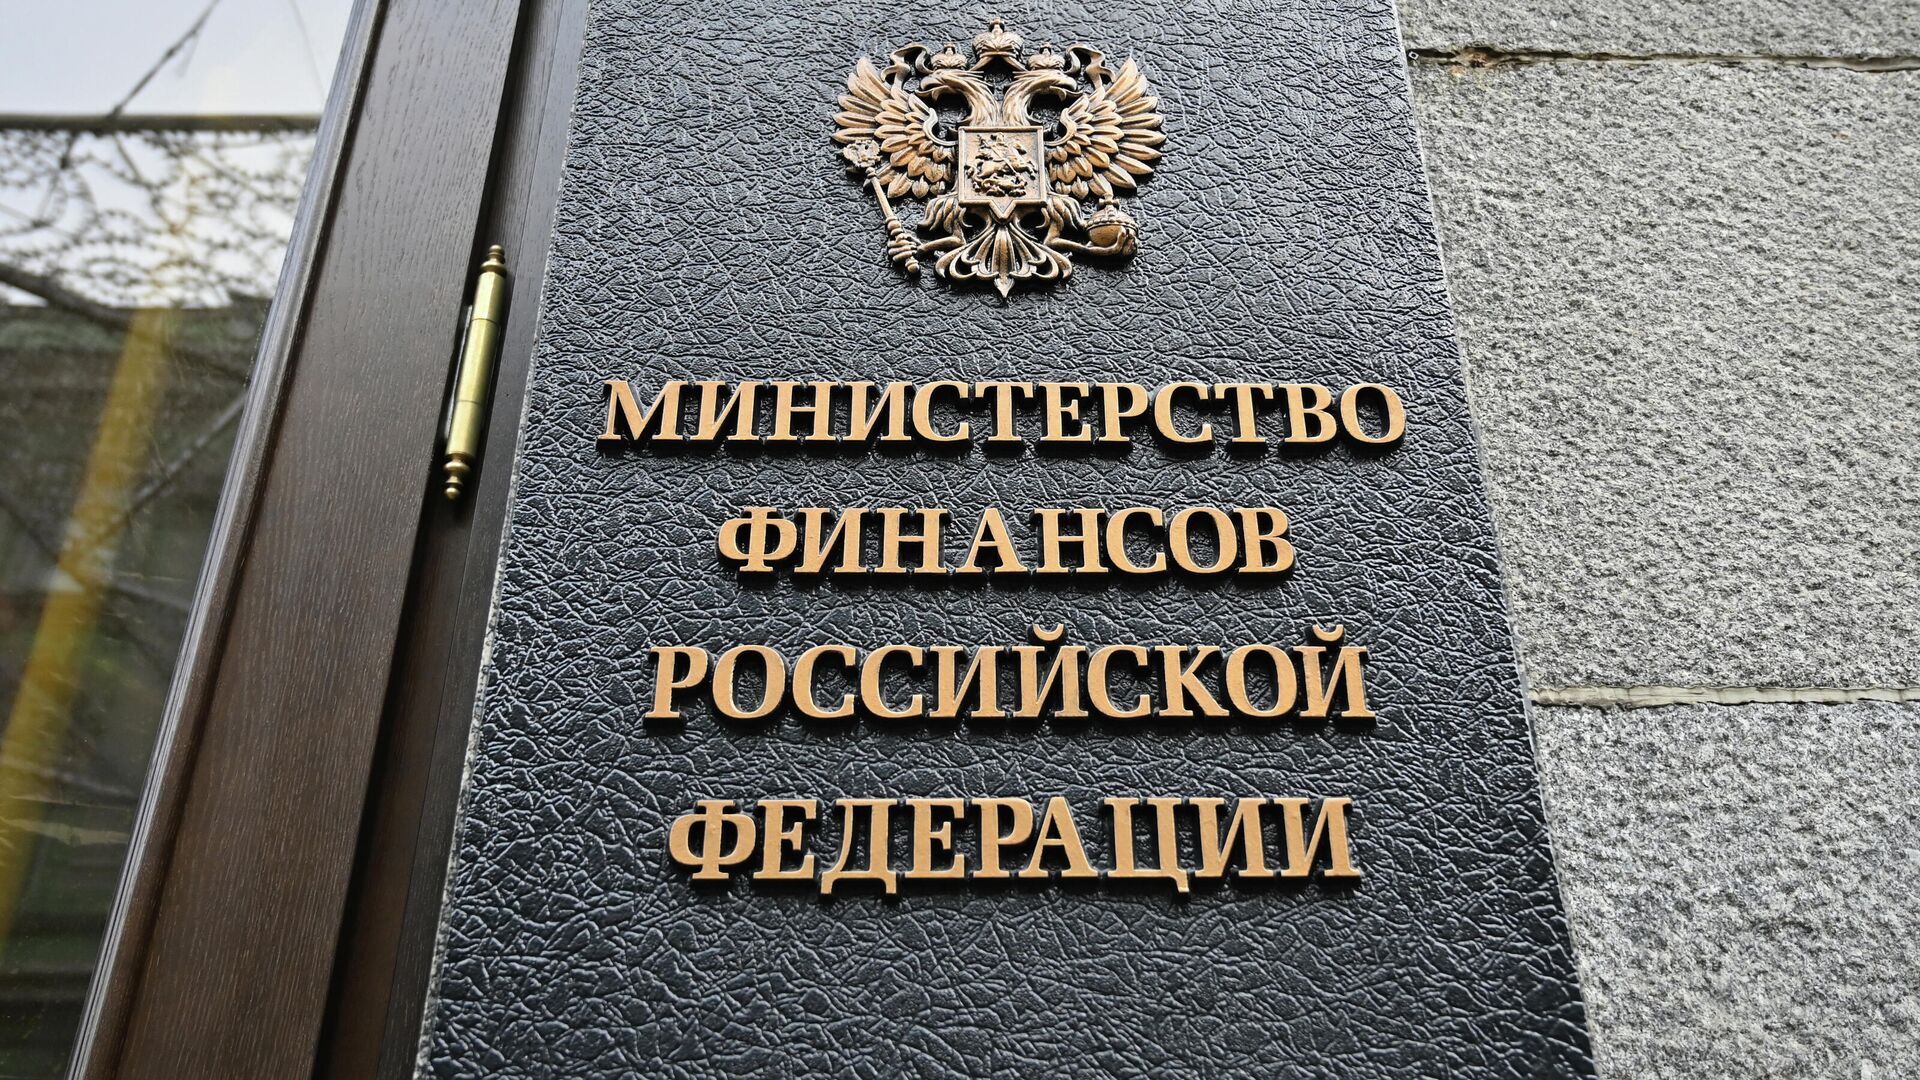 Ассоциация получила ответ Министерства финансов России на предложенные меры поддержки отрасли